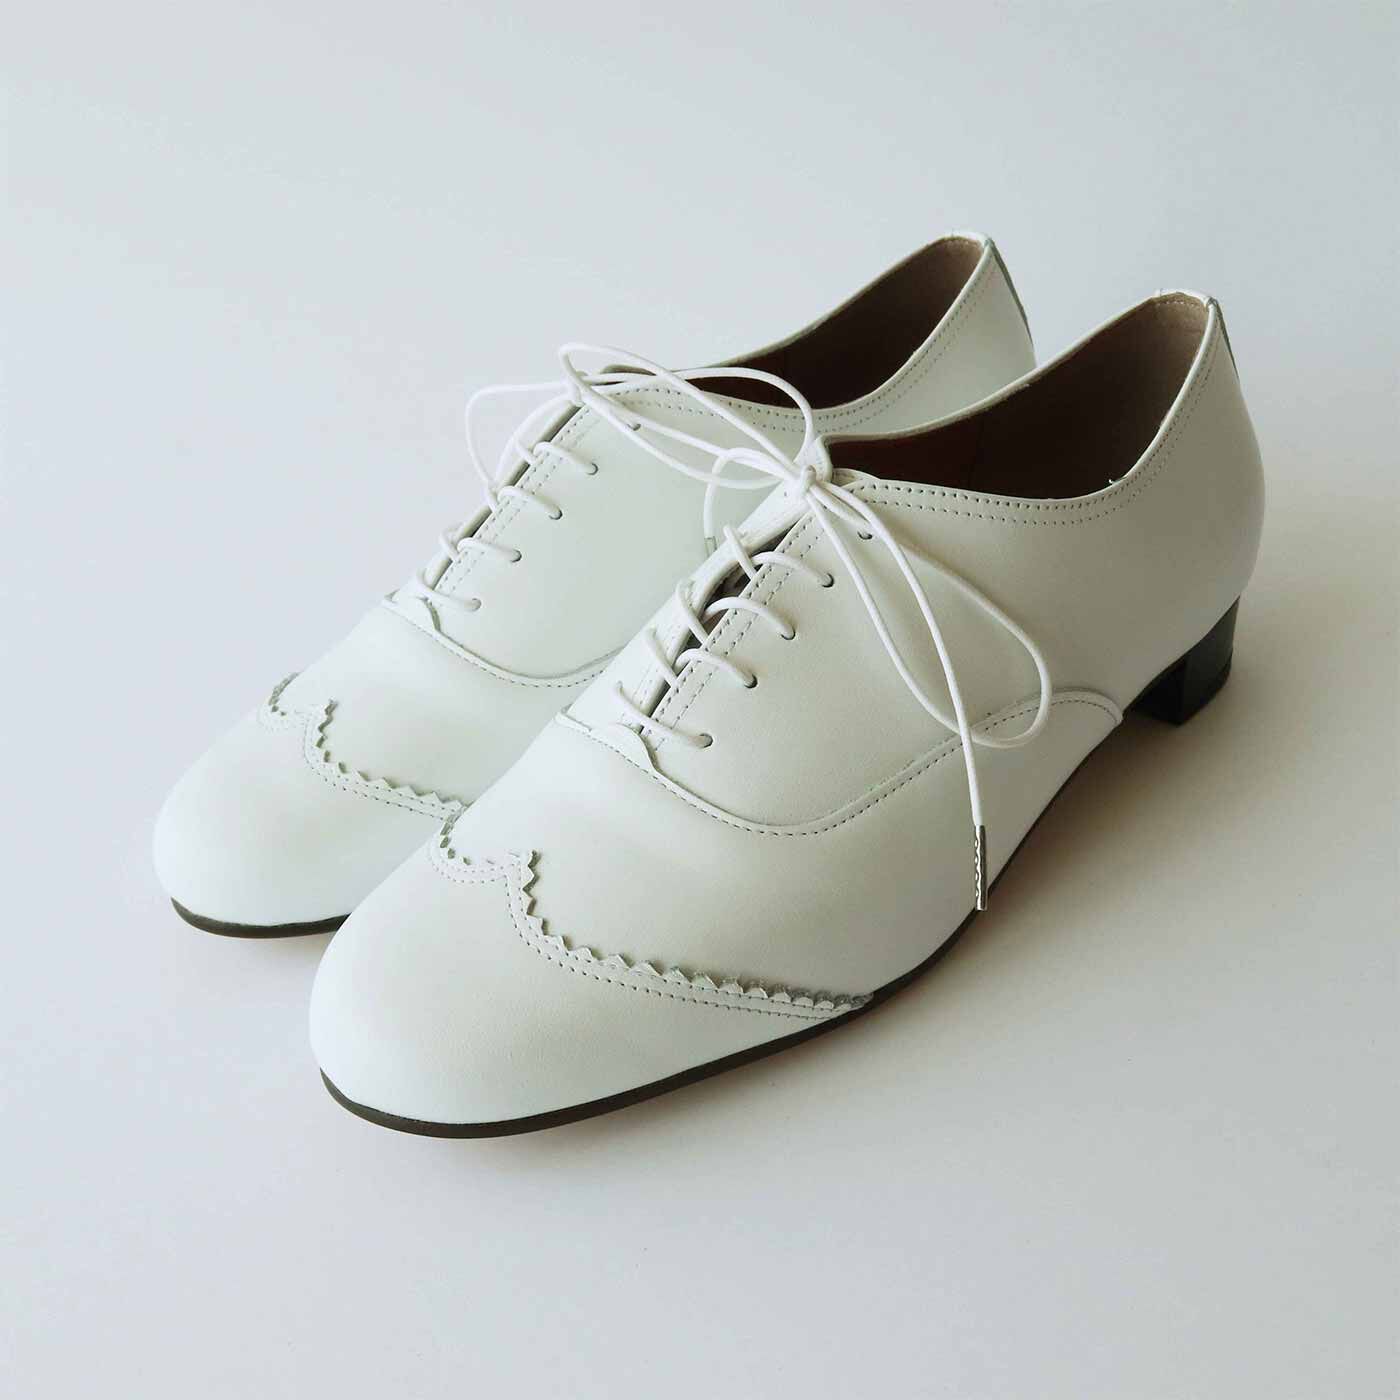 ＆Stories|長田の靴メーカーと作った 職人本革のレースアップシューズ〈ホワイト〉|今回から22cmサイズも登場。充実の8サイズ展開です。